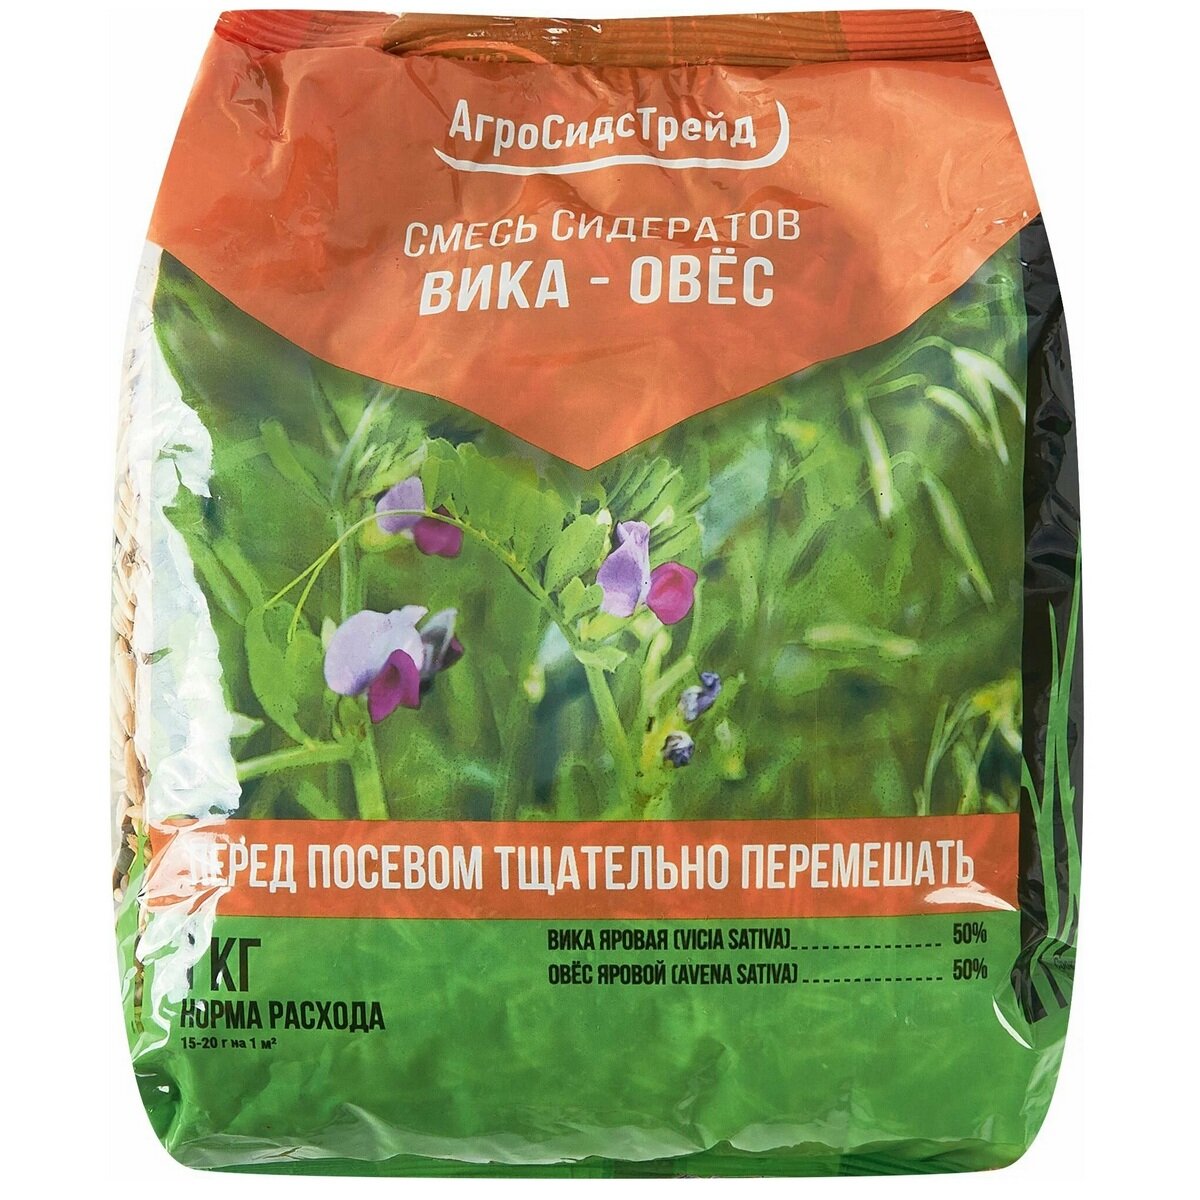 Семена сидератов АгроСидсТрейд смесь Вика-Овес, 1 кг